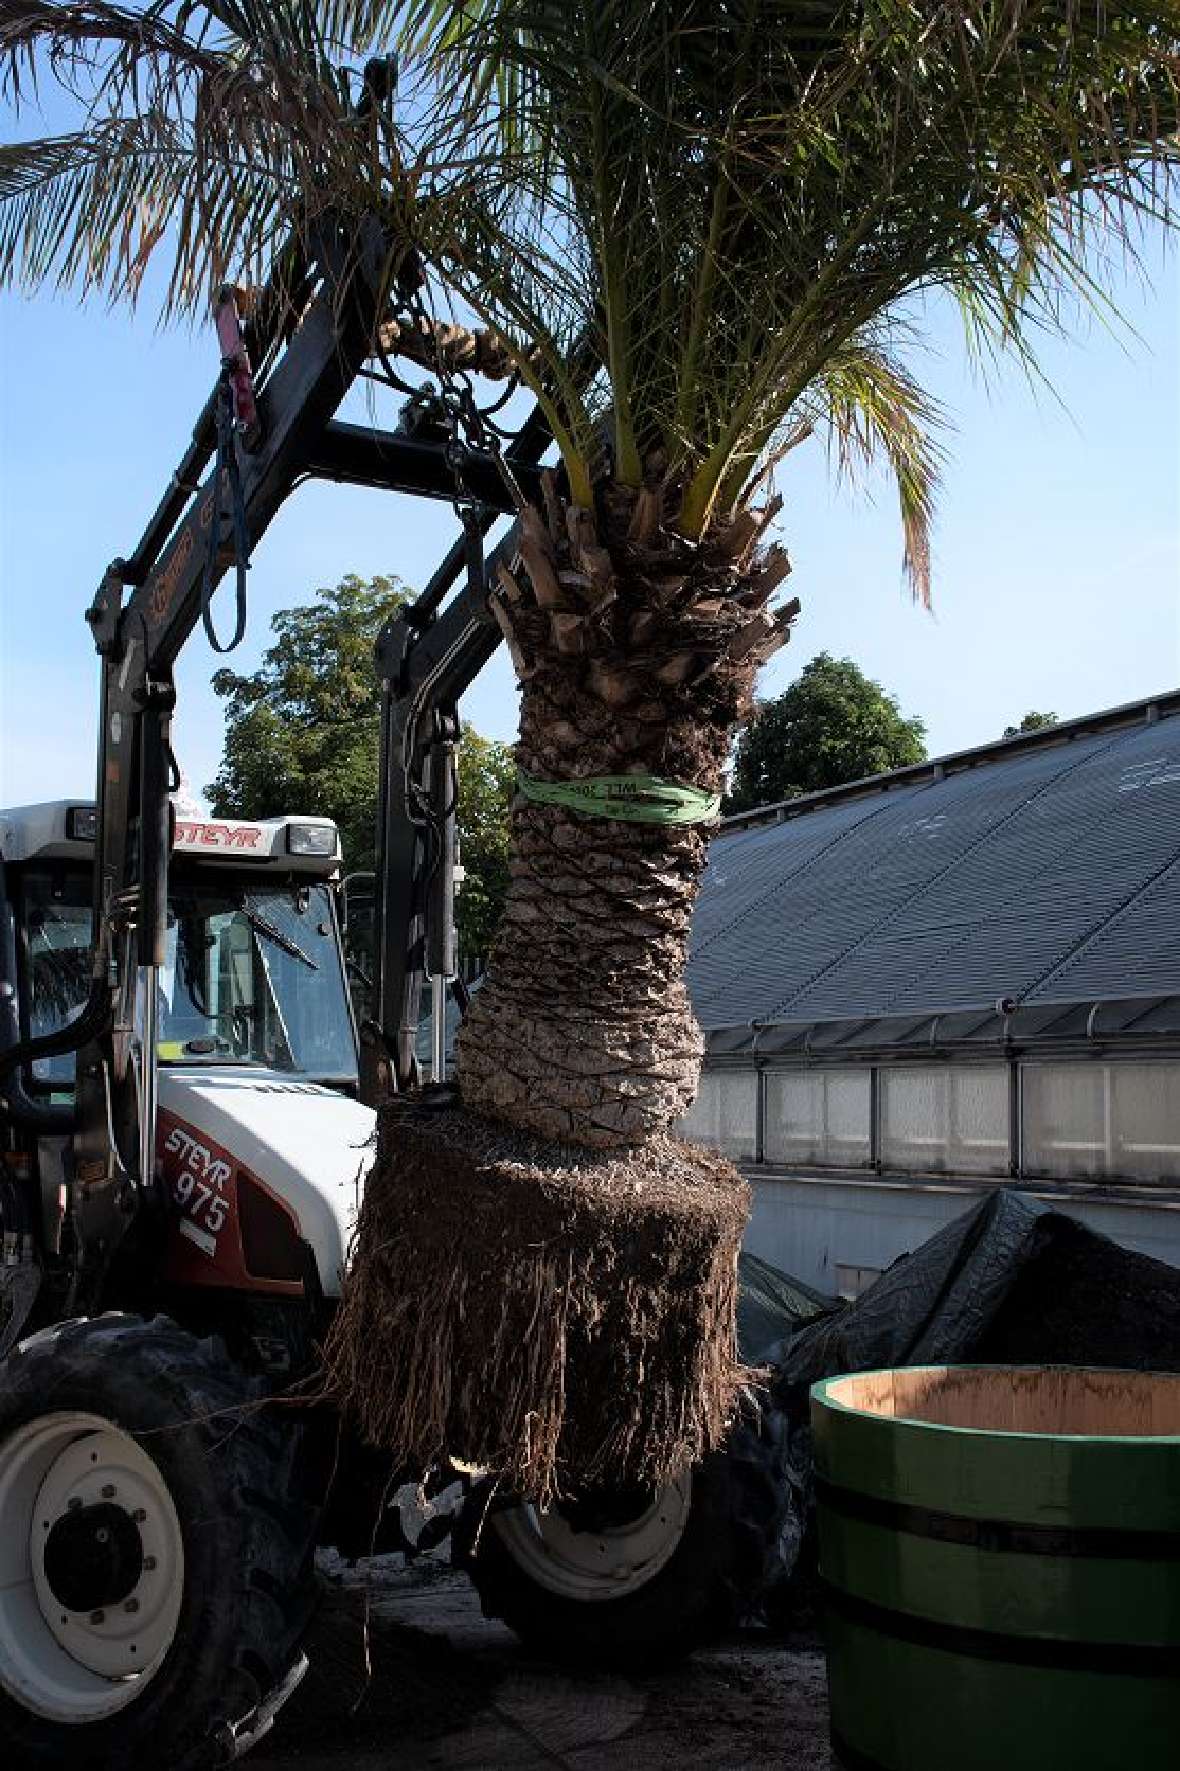 zu sehen ist ein Traktor, der eine Palme mit einem sehr großen Wurzelballen in einen neuen Holzkübel hebt.